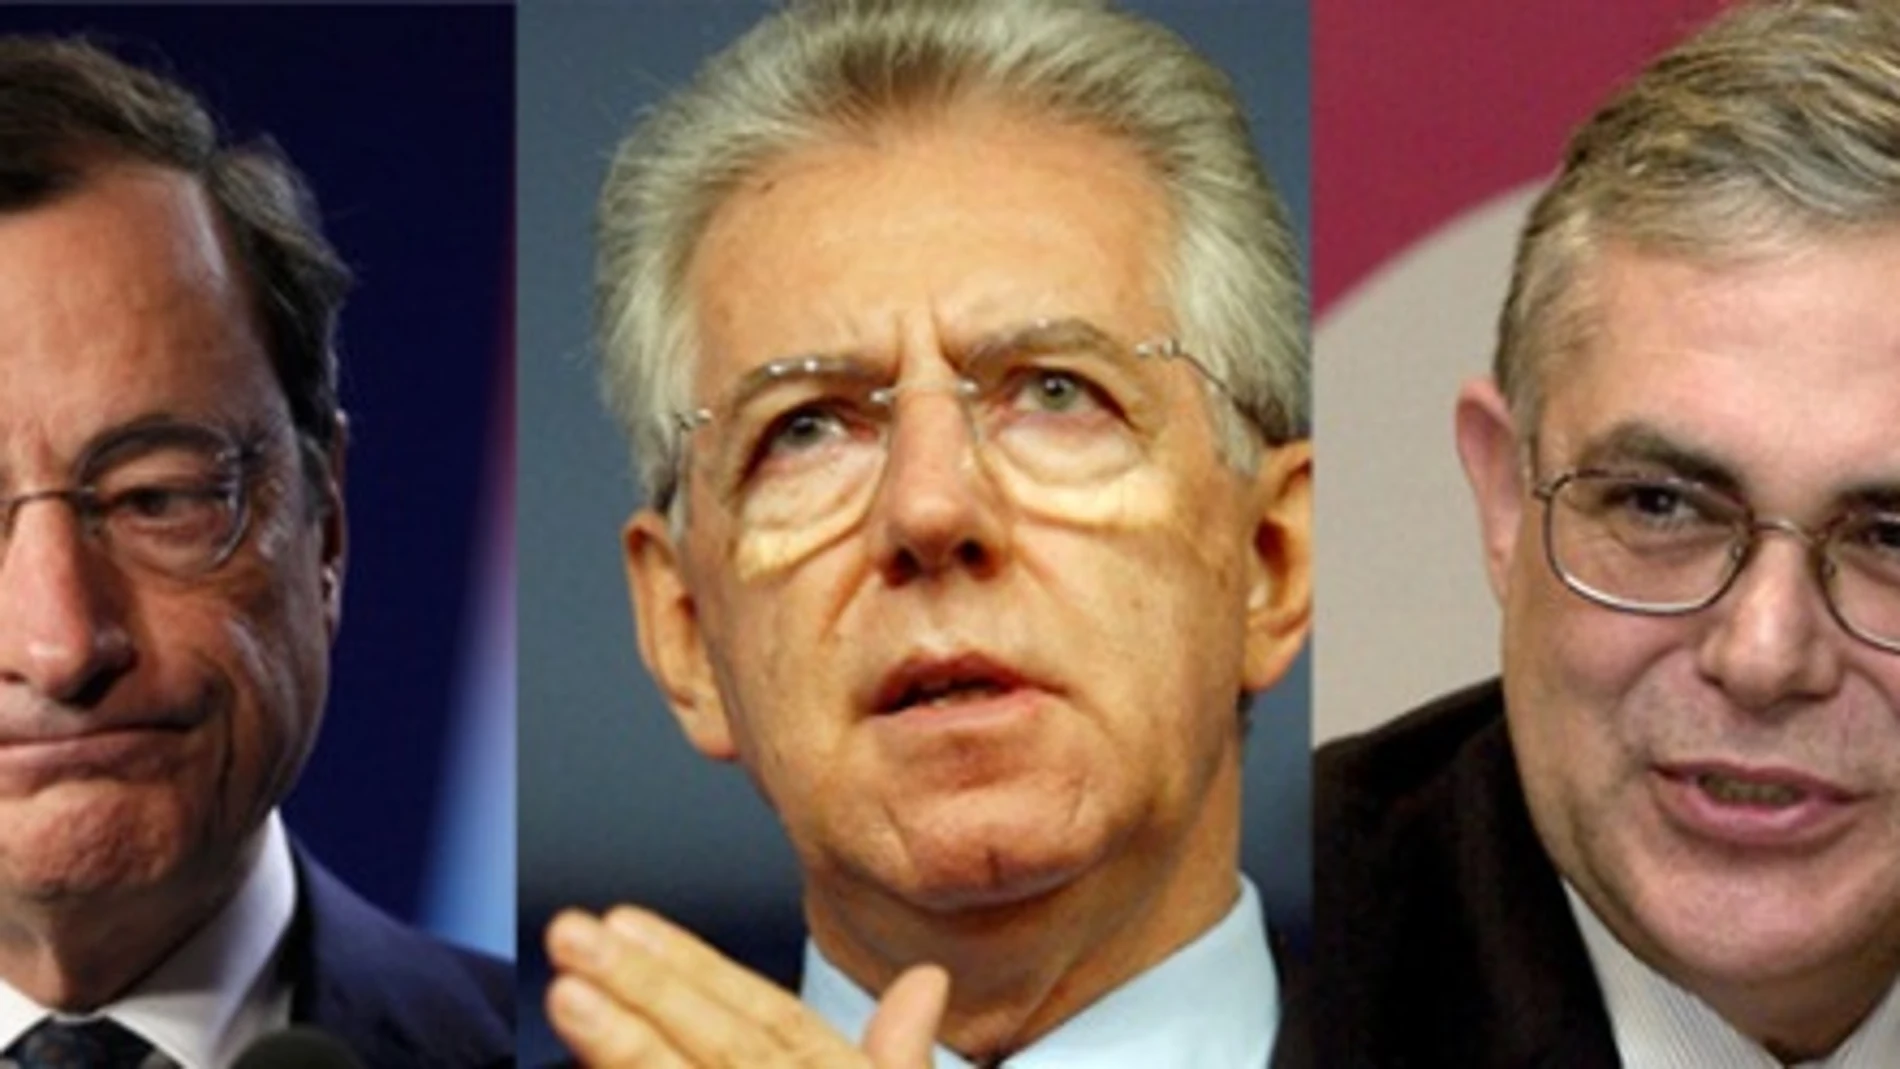 ¿Qué tienen en común Monti, Draghi y Papademos?